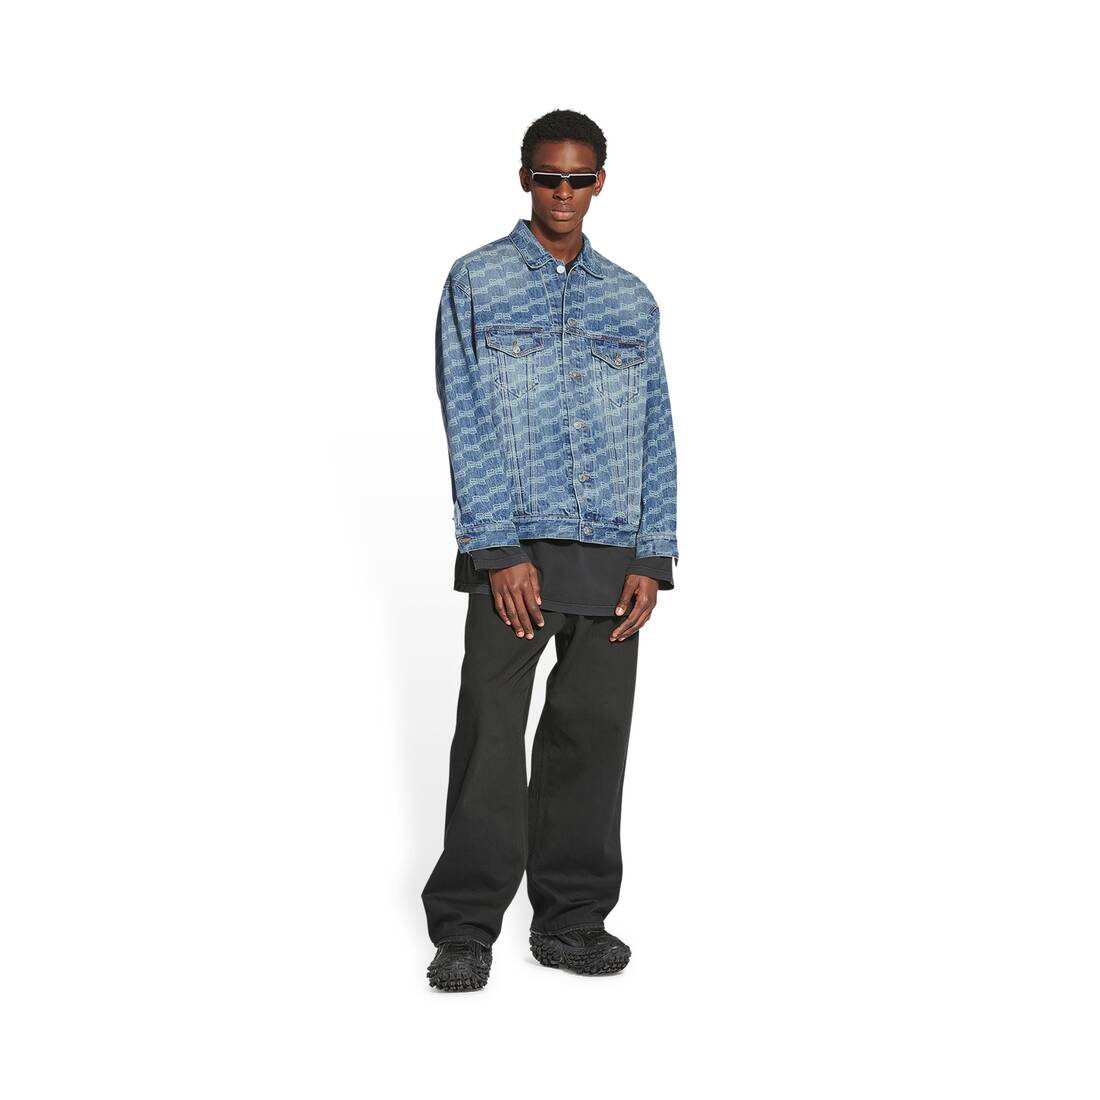 Louis Vuitton 3D Monogram Zip-Up Jacket Blue Grey. Size 36